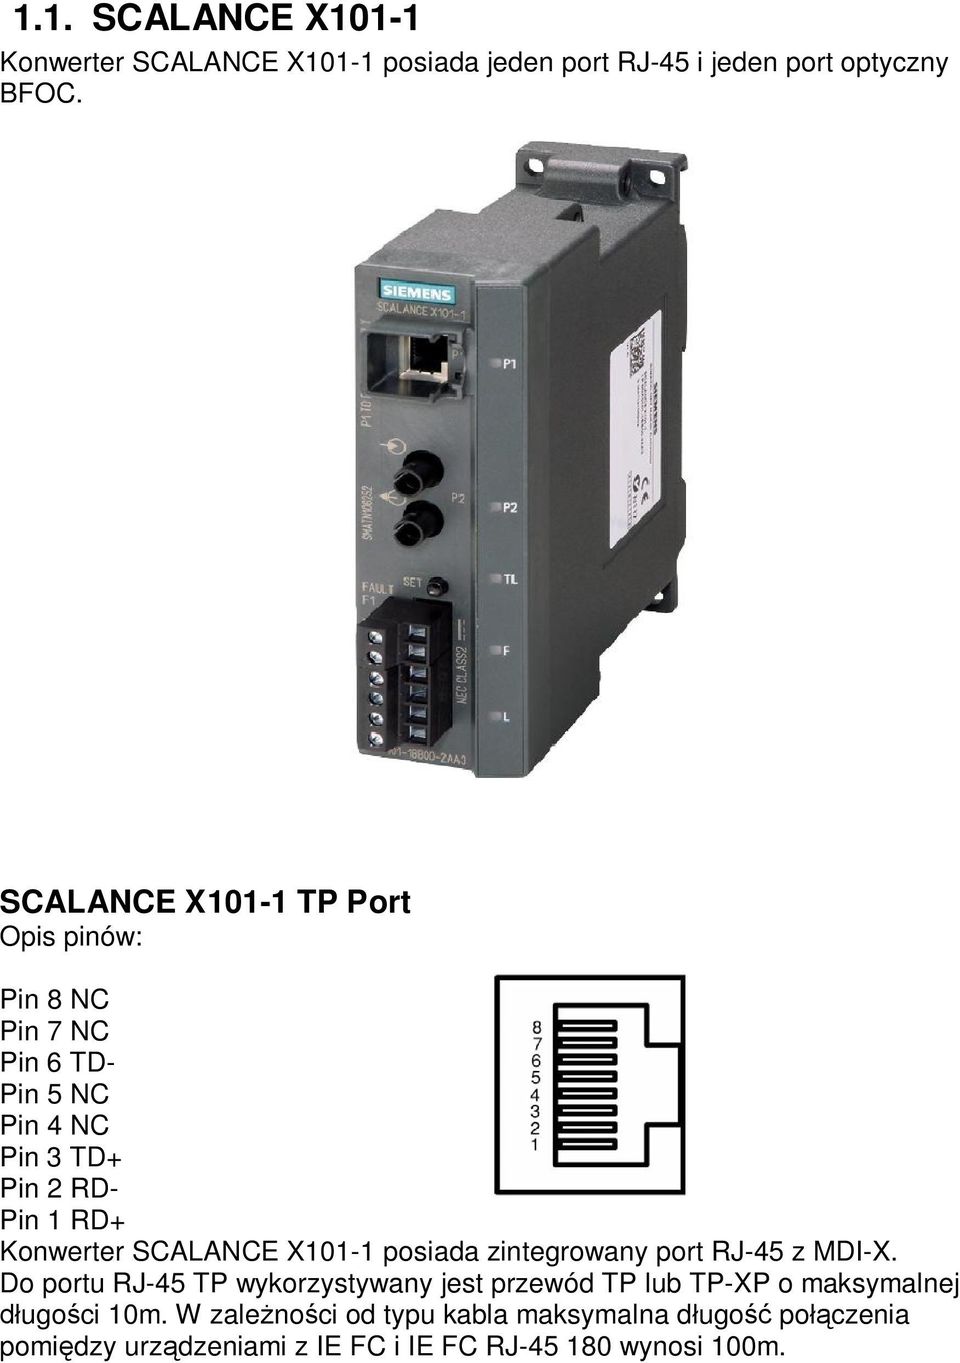 SCALANCE X101-1 posiada zintegrowany port RJ-45 z MDI-X.